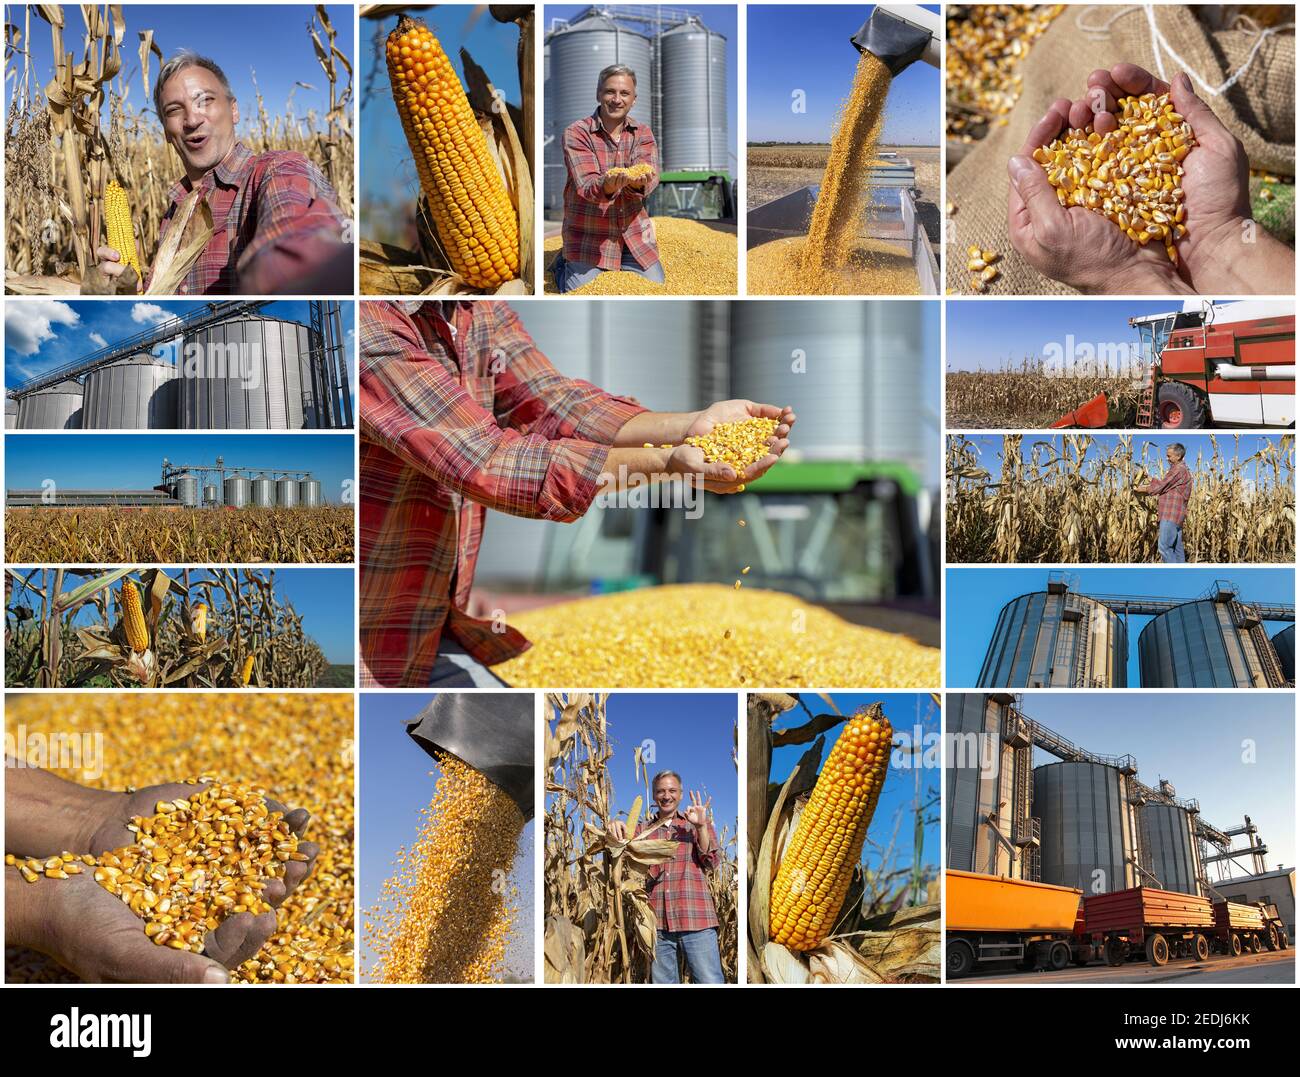 Collage de photographies montrant du maïs mûr sur les épis de maïs dans les champs agricoles cultivés, le temps de récolte et le stockage du maïs dans le séchoir à céréales agricoles Banque D'Images